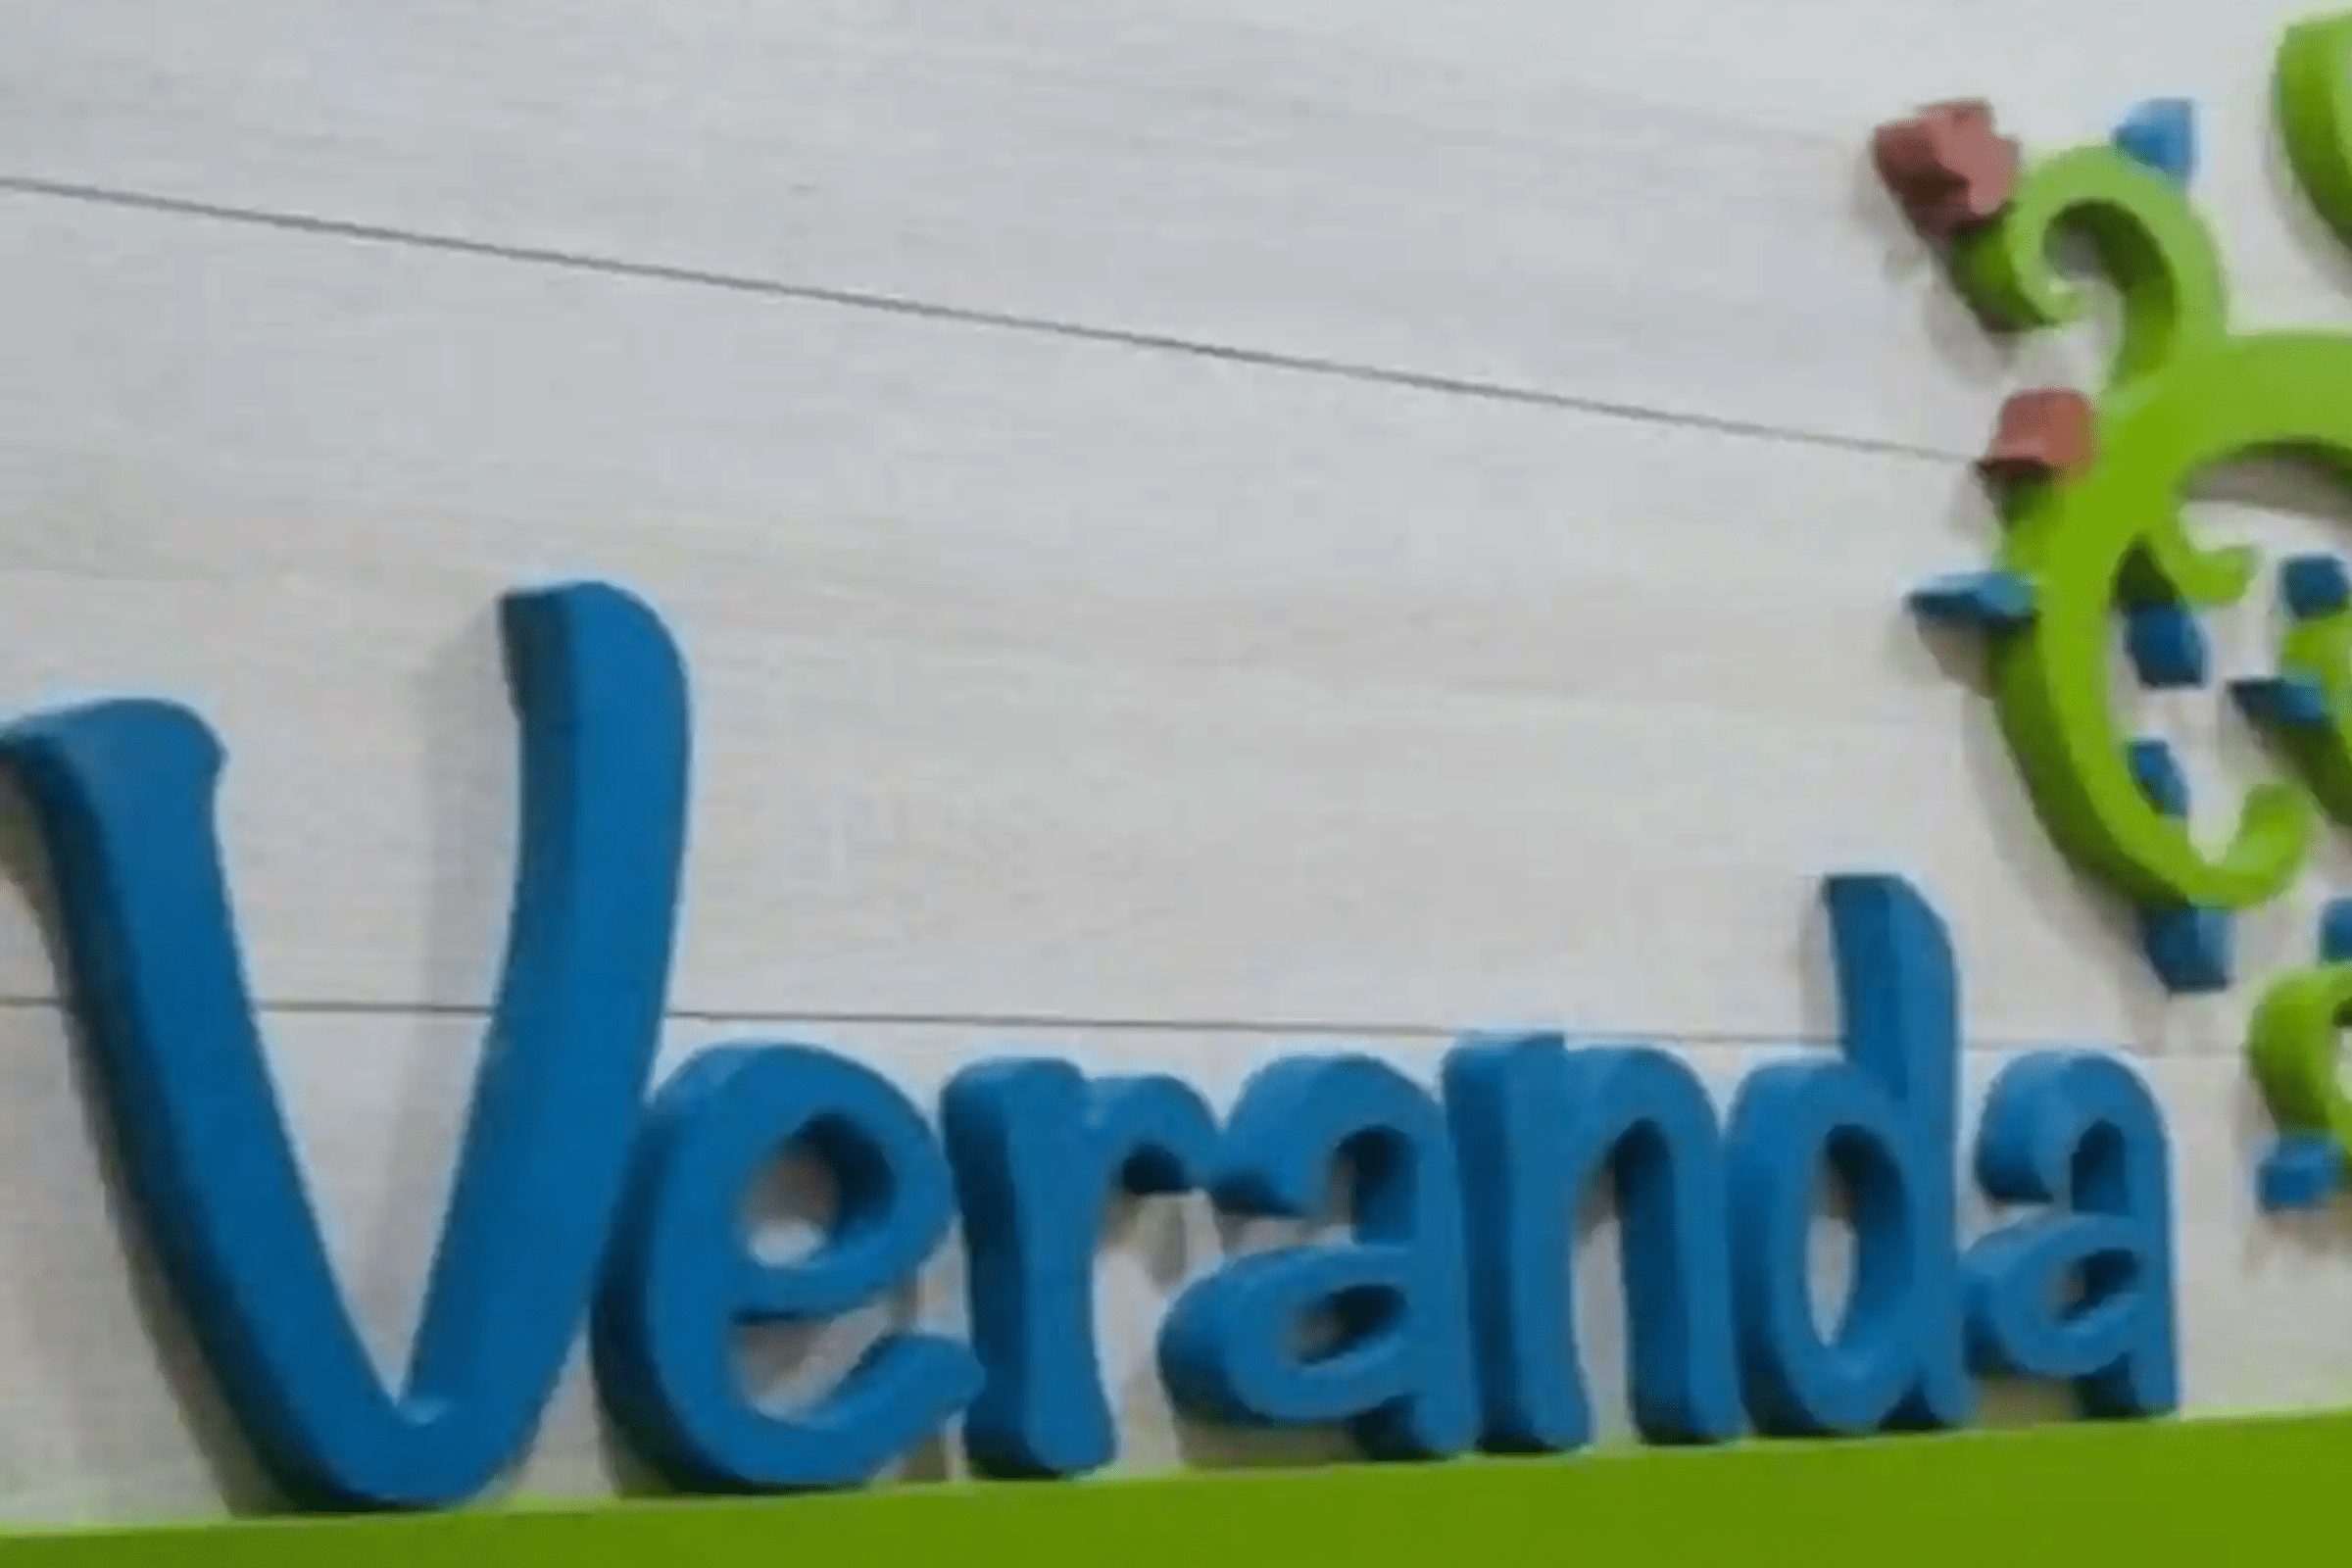 Veranda Learning Solutions IPO আজ খোলে: আপনার যা কিছু জানা দরকার